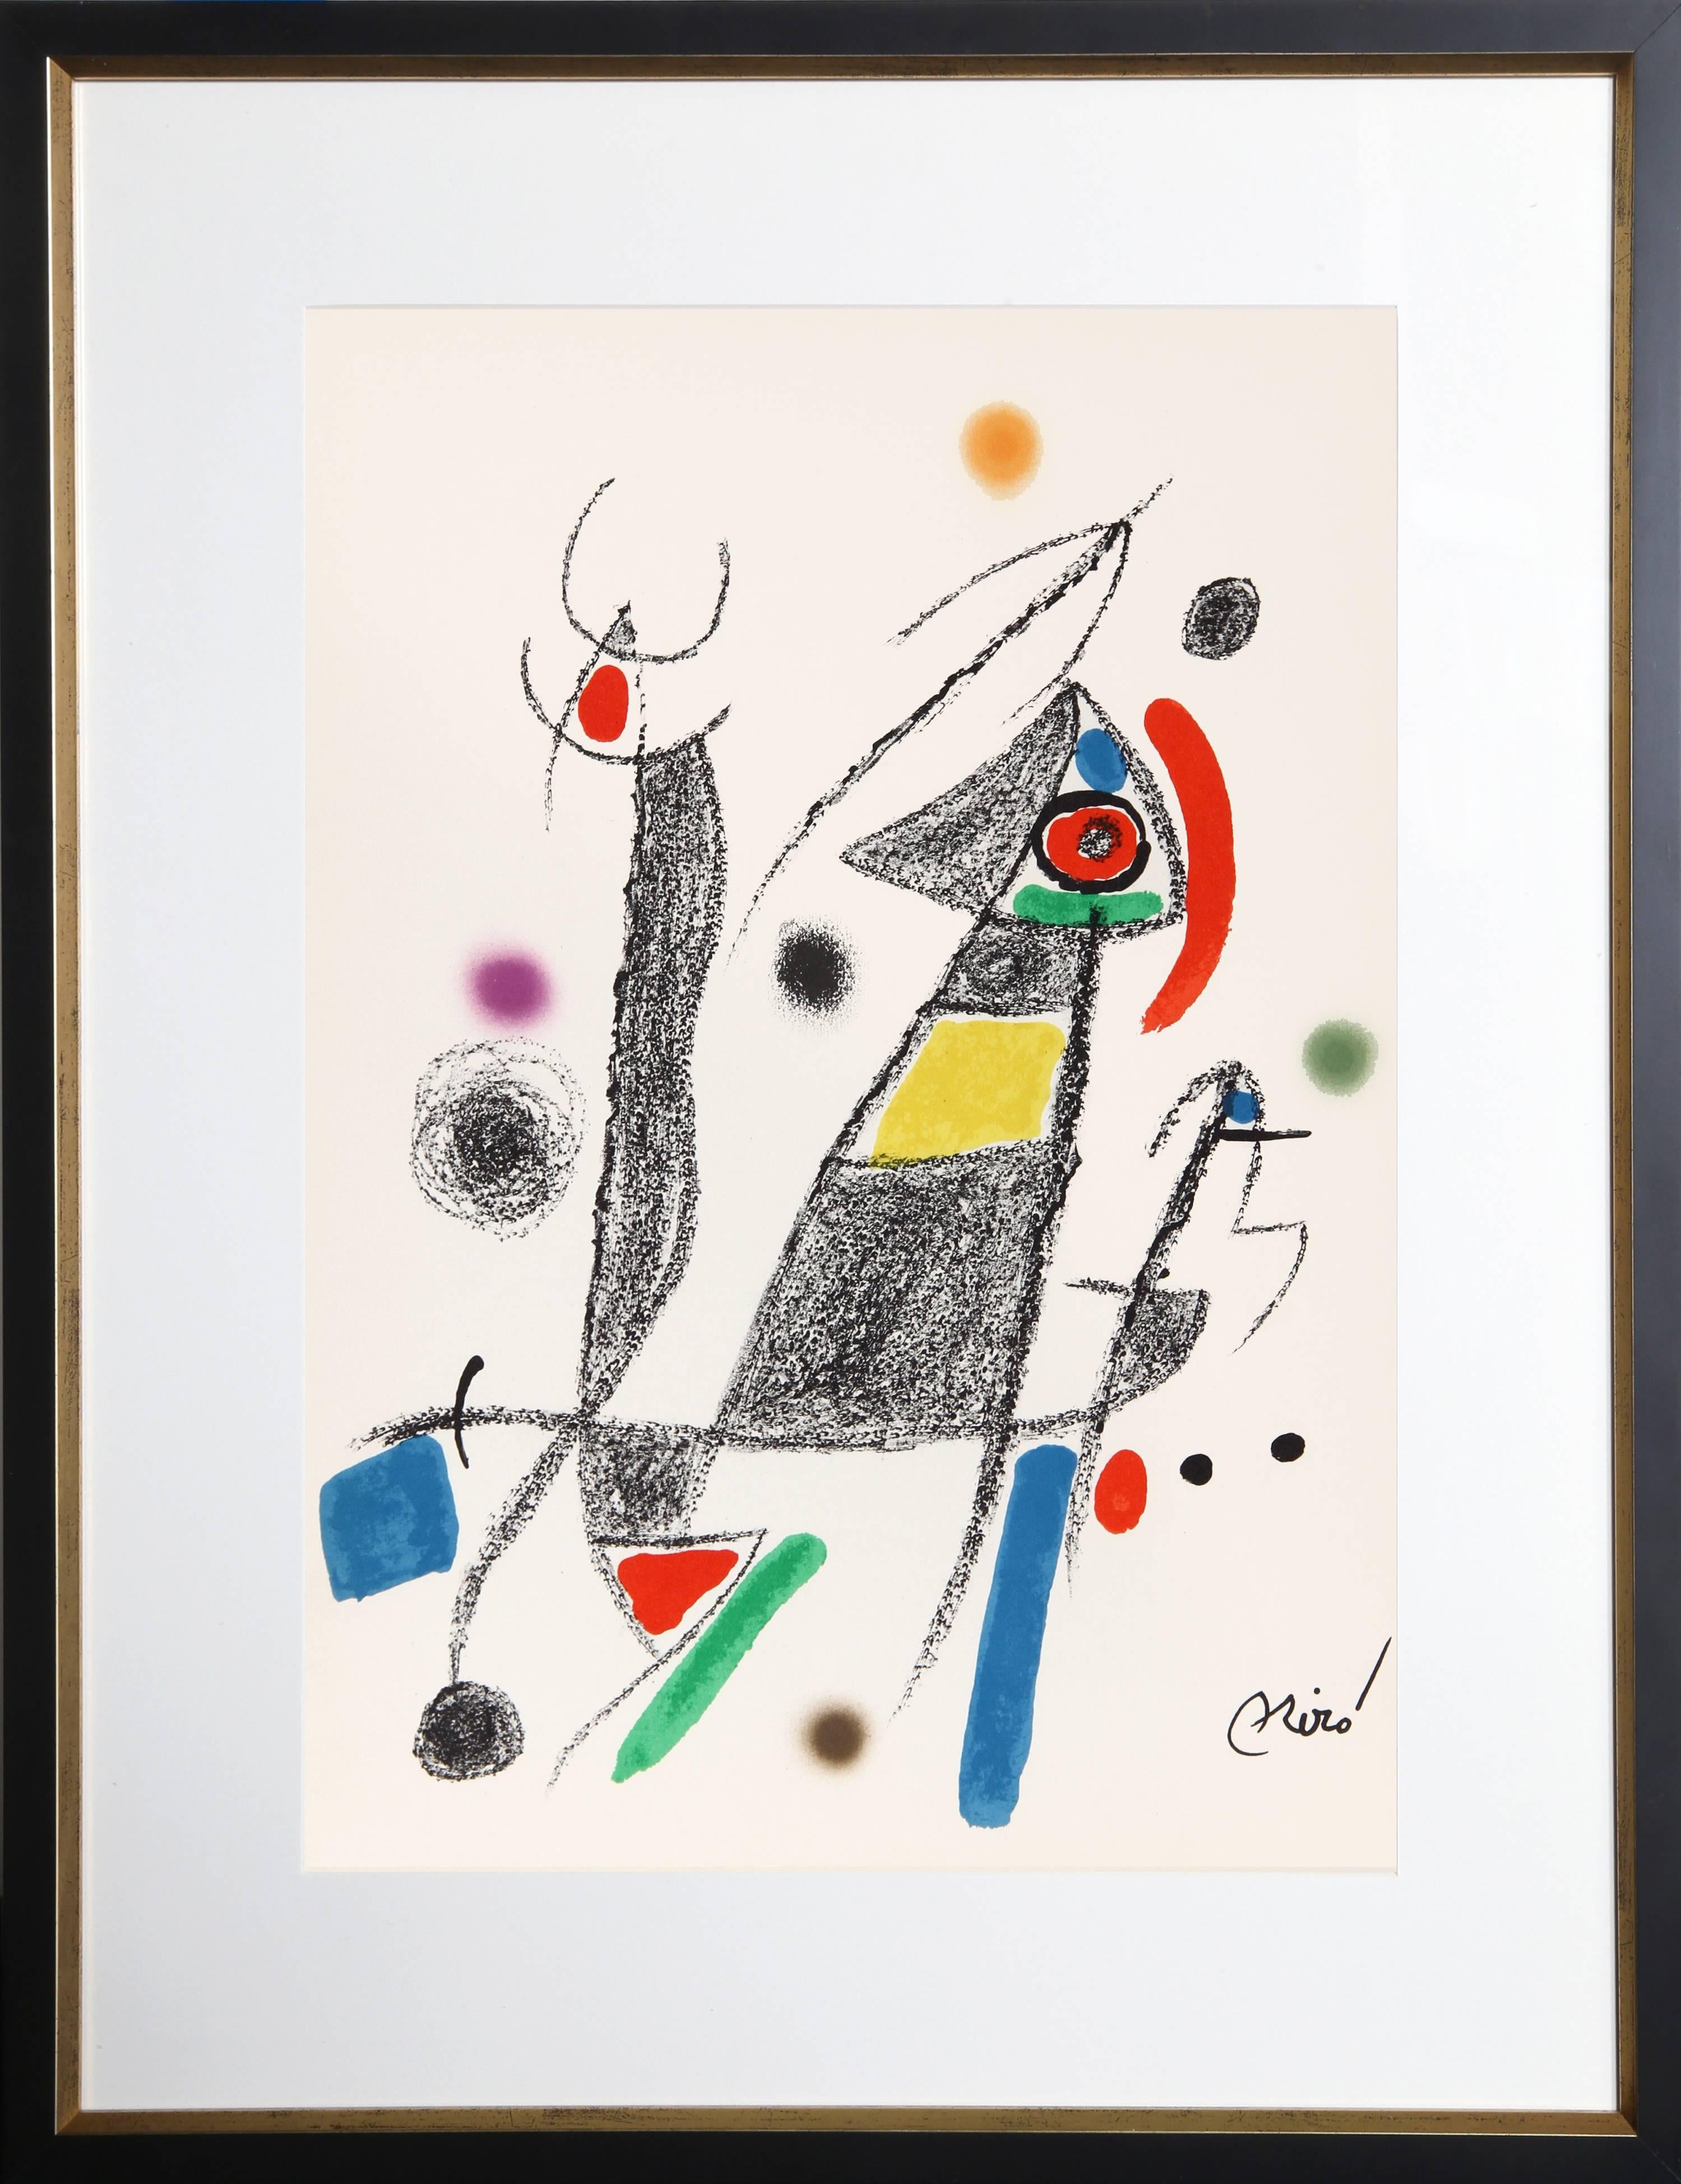 Joan Miró Abstract Print - Maravillas con Variaciones Acrosticas en el Jardin de Miro (Number 8)